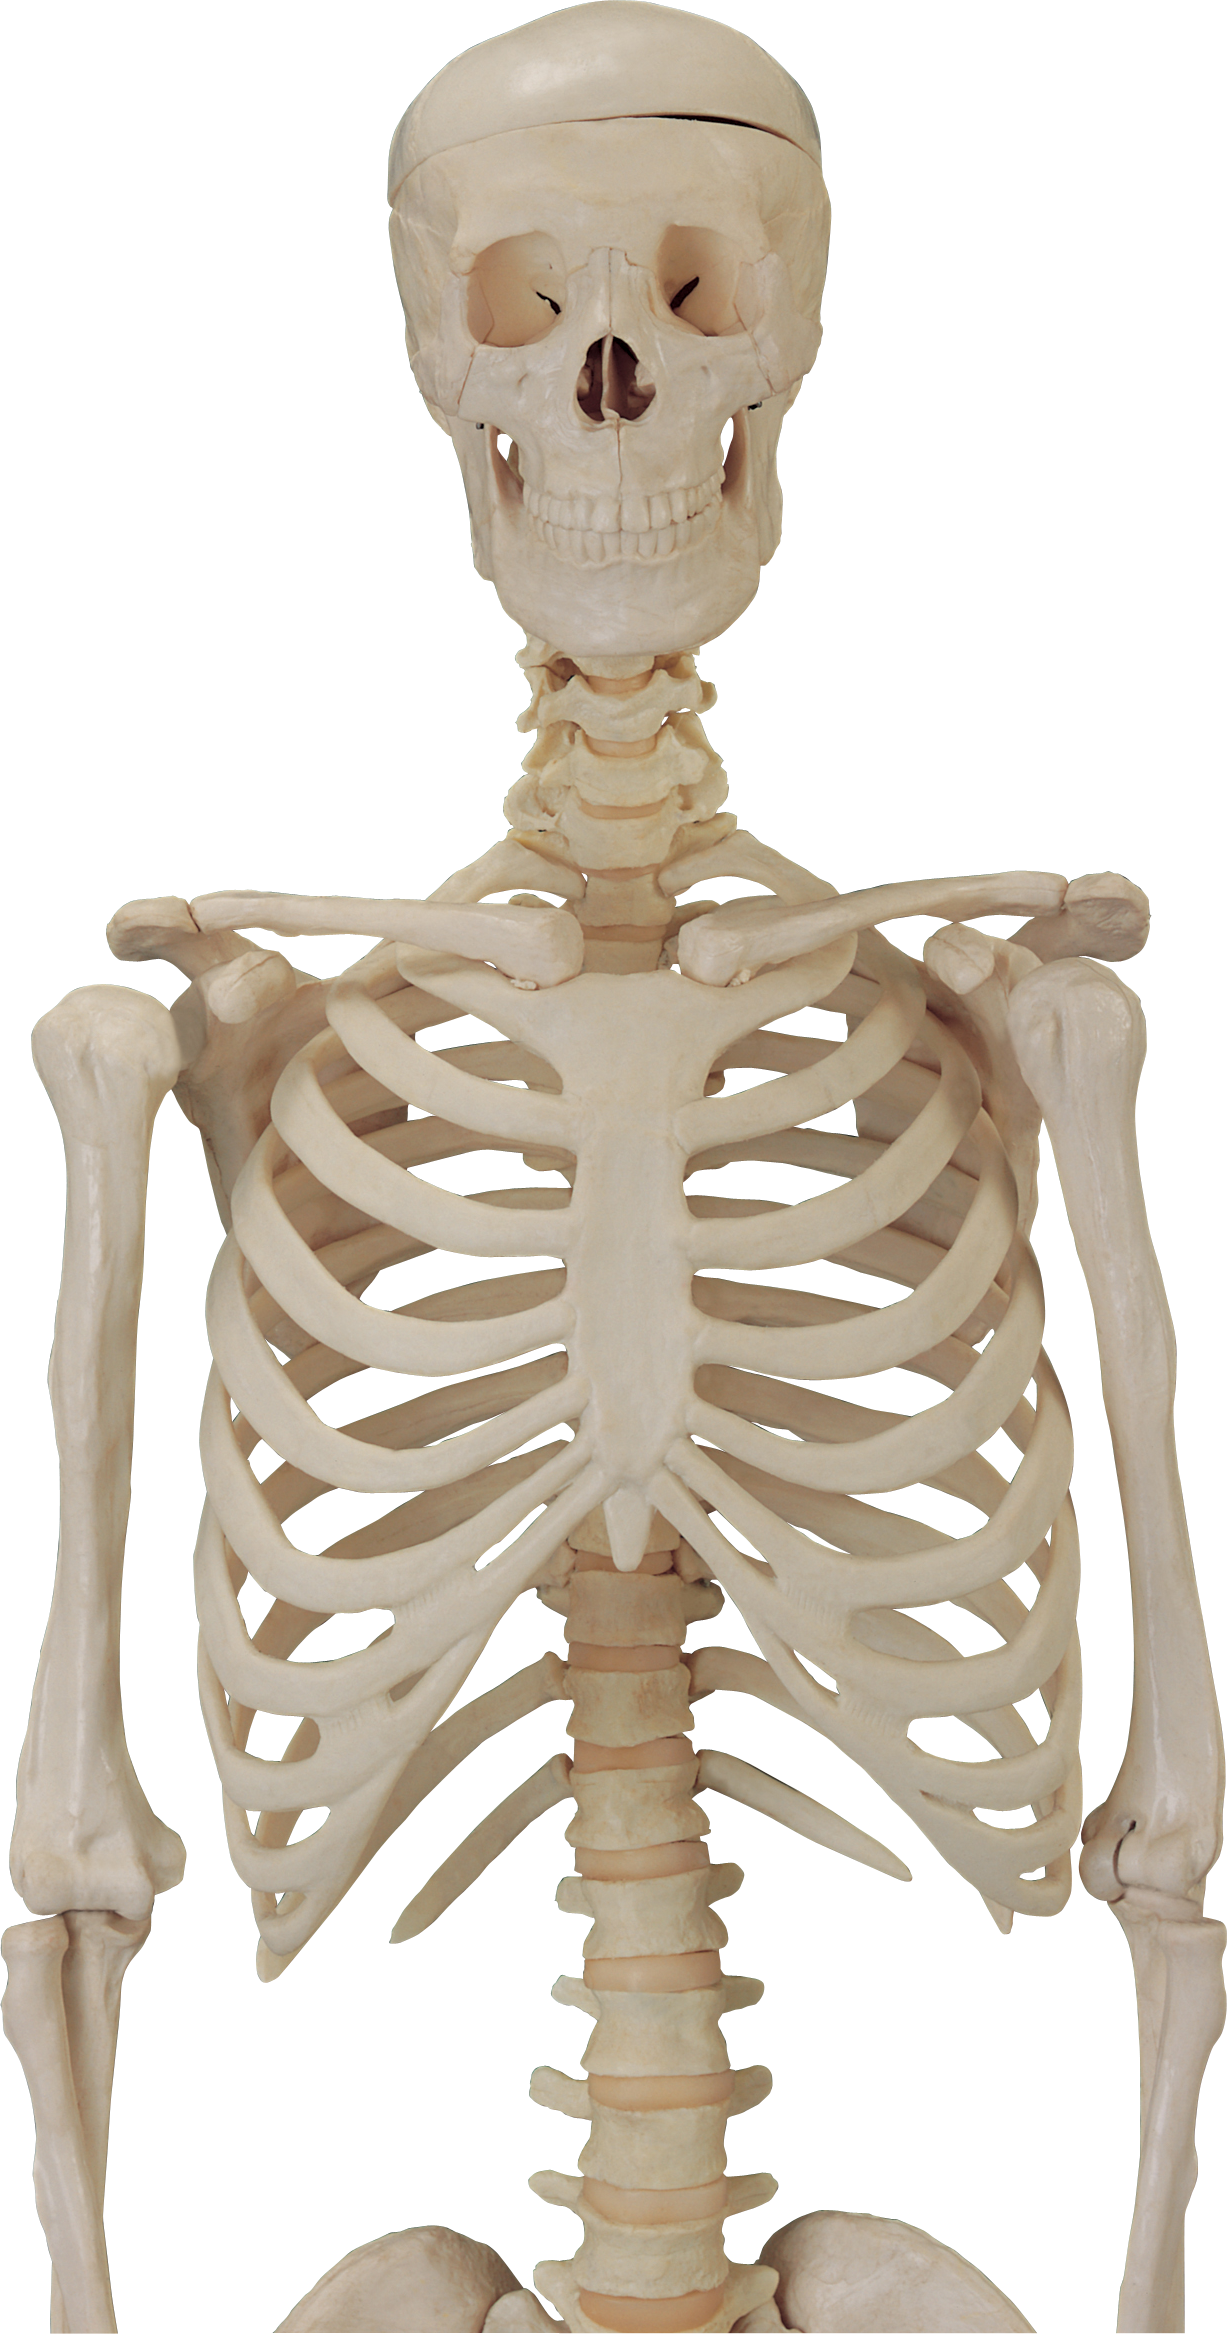 Skeleton, Skull PNG Image